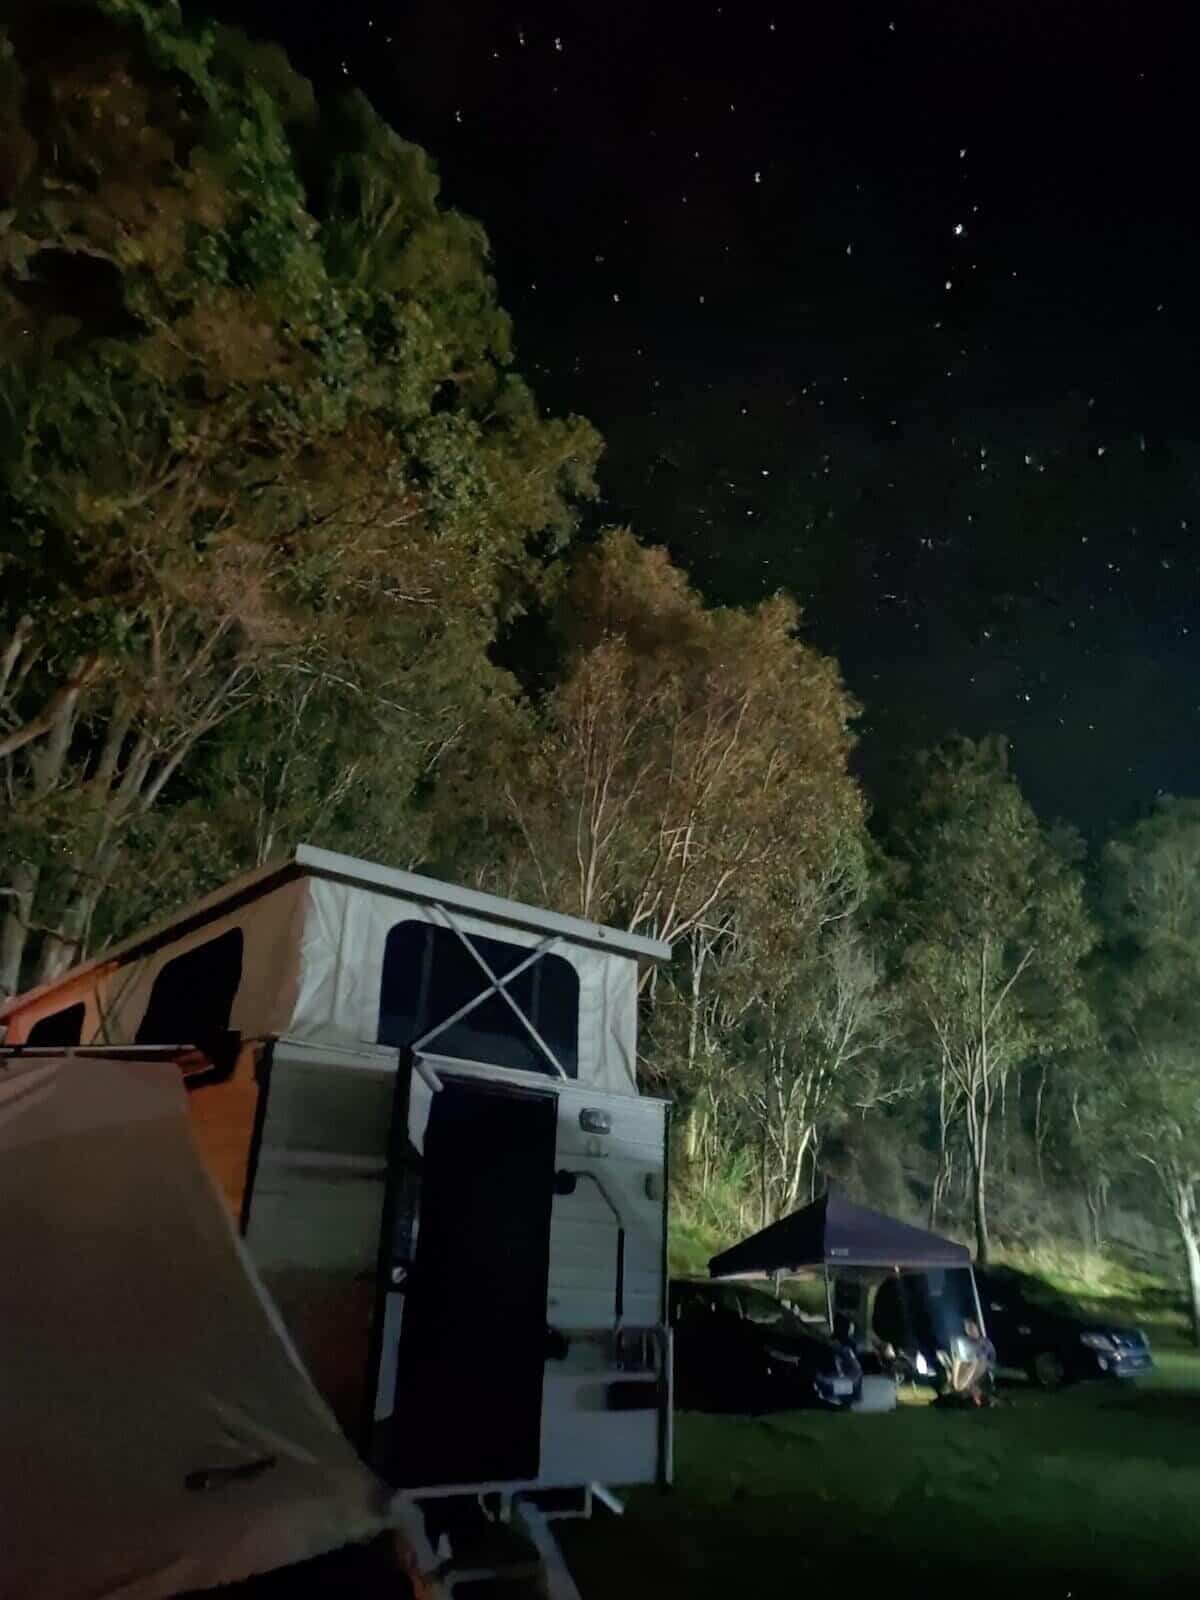 slide on camper in brisbane at night